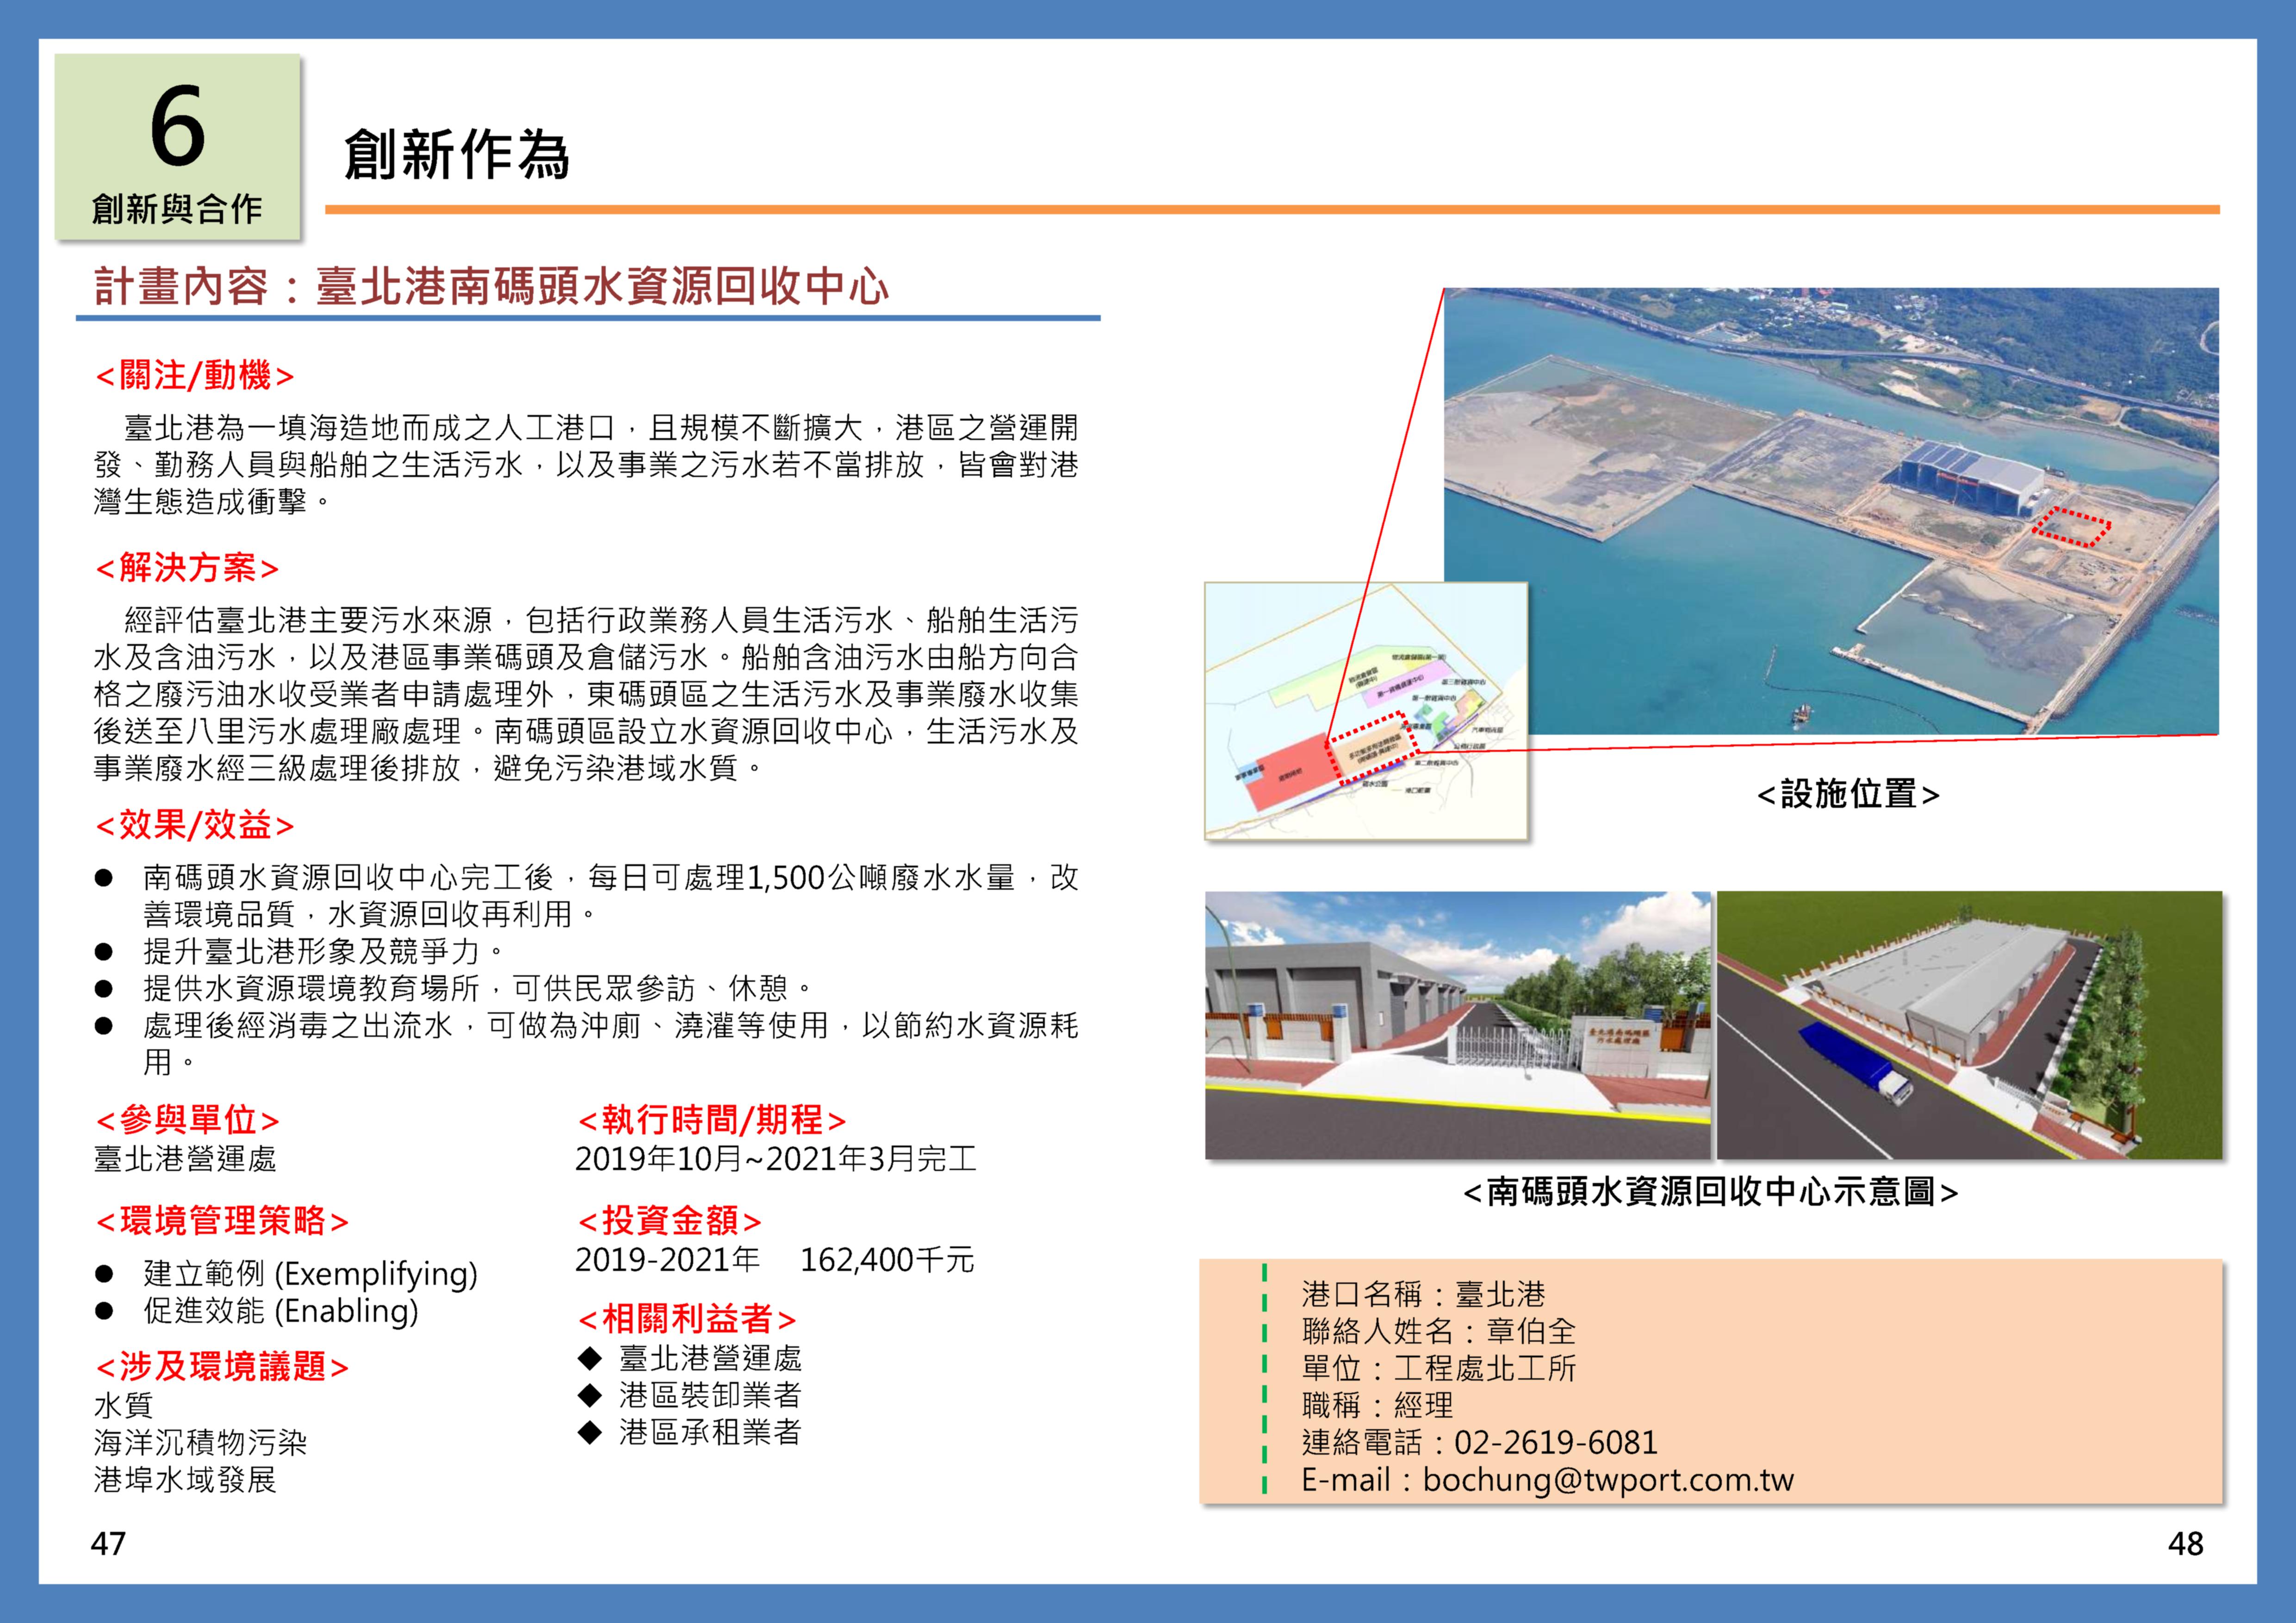 臺北港南碼頭水資源回收中心